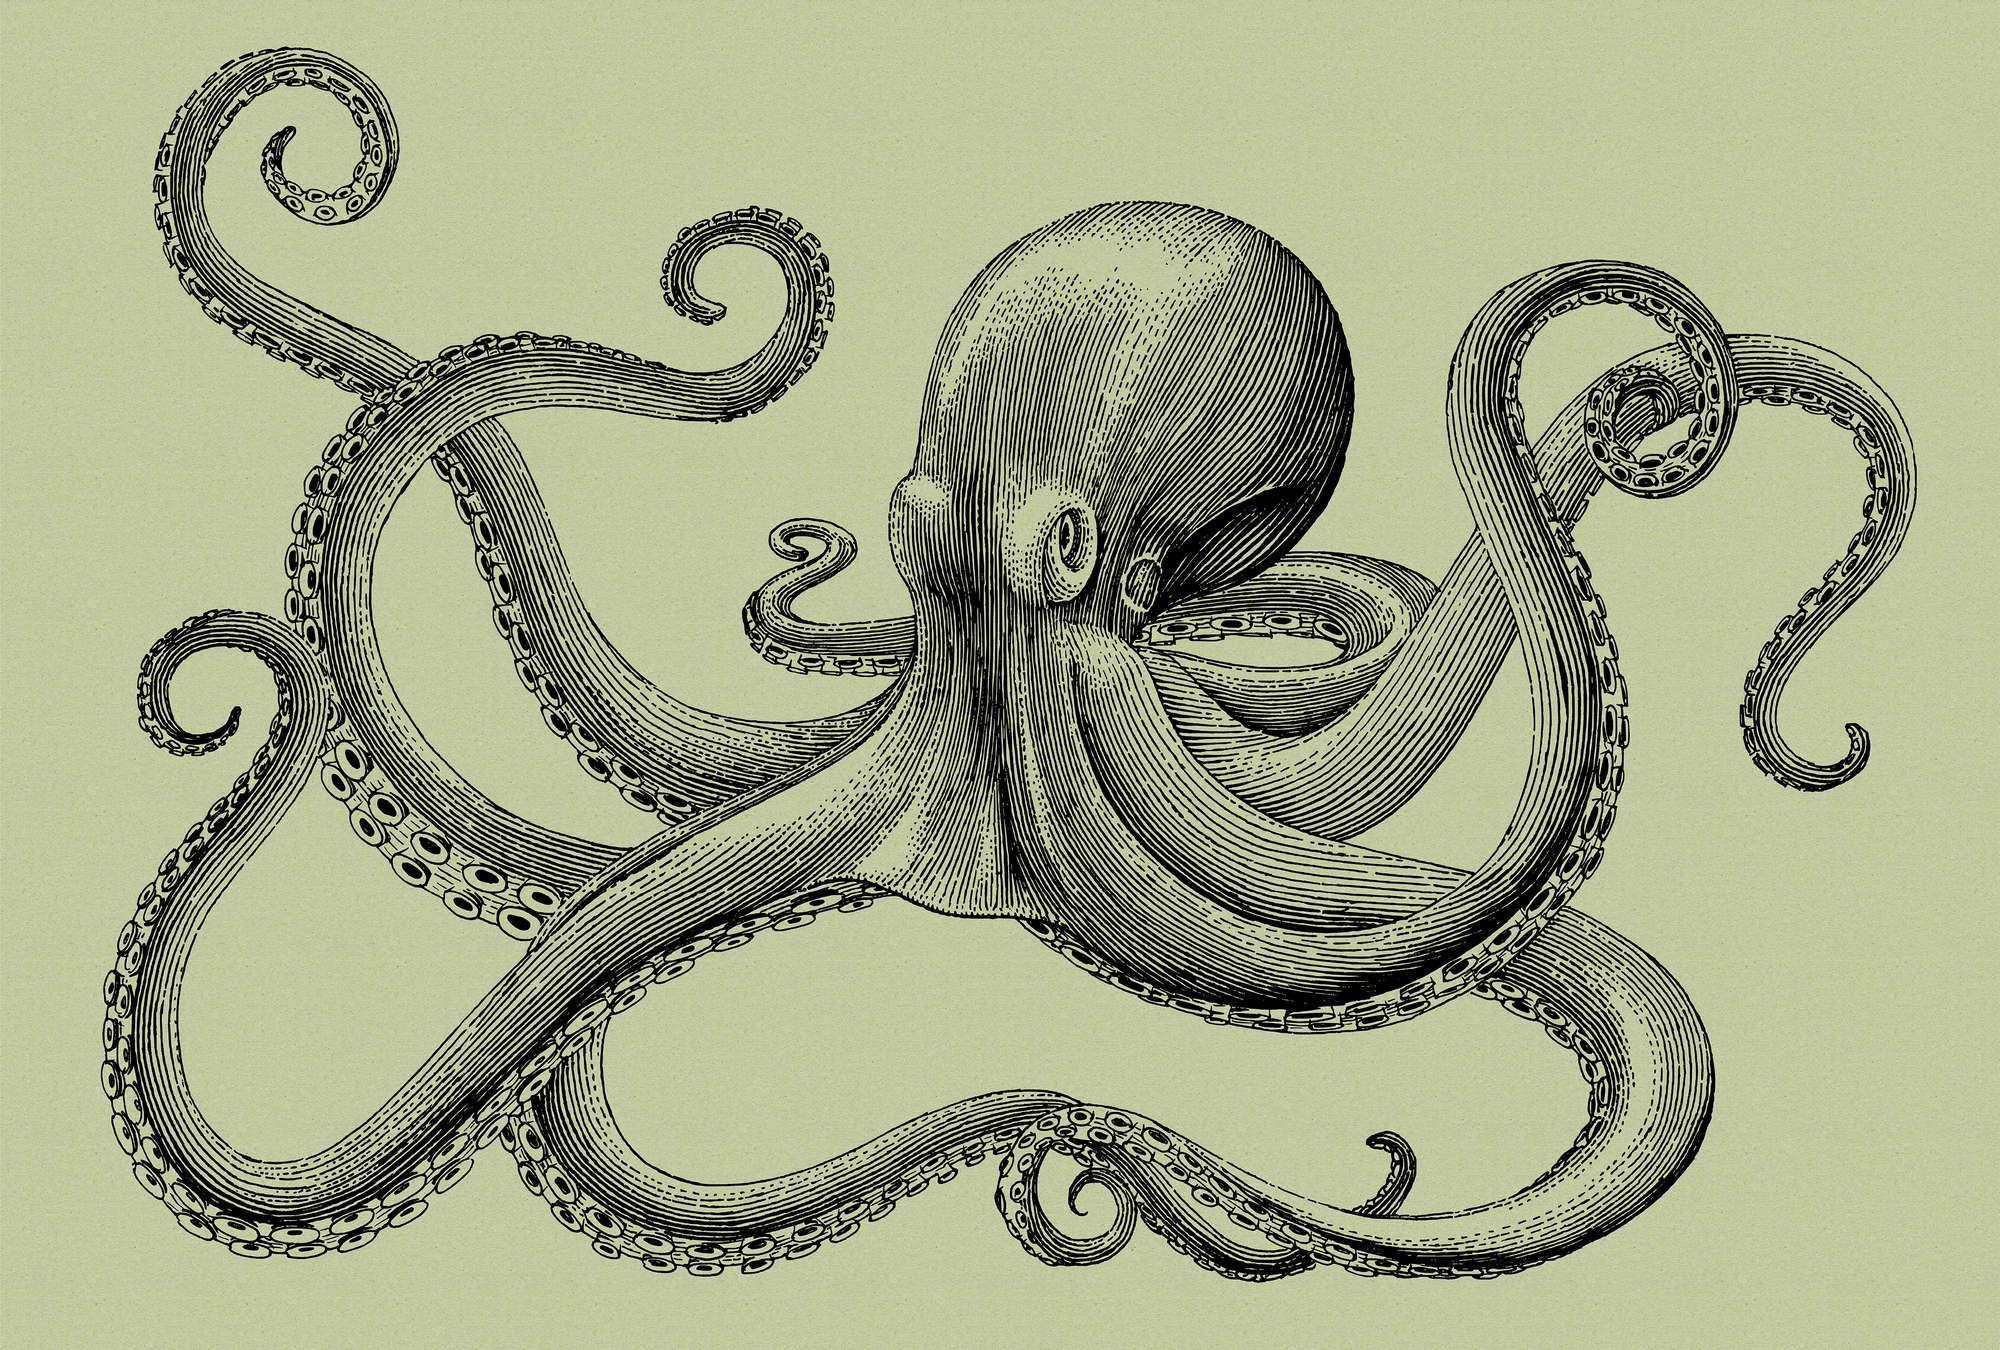             Jules 3 - Octopus Onderlaag behang Schetsstijl & Vintage Look - Karton Textuur - Groen, Zwart | Pearl Smooth Vliesbehang
        